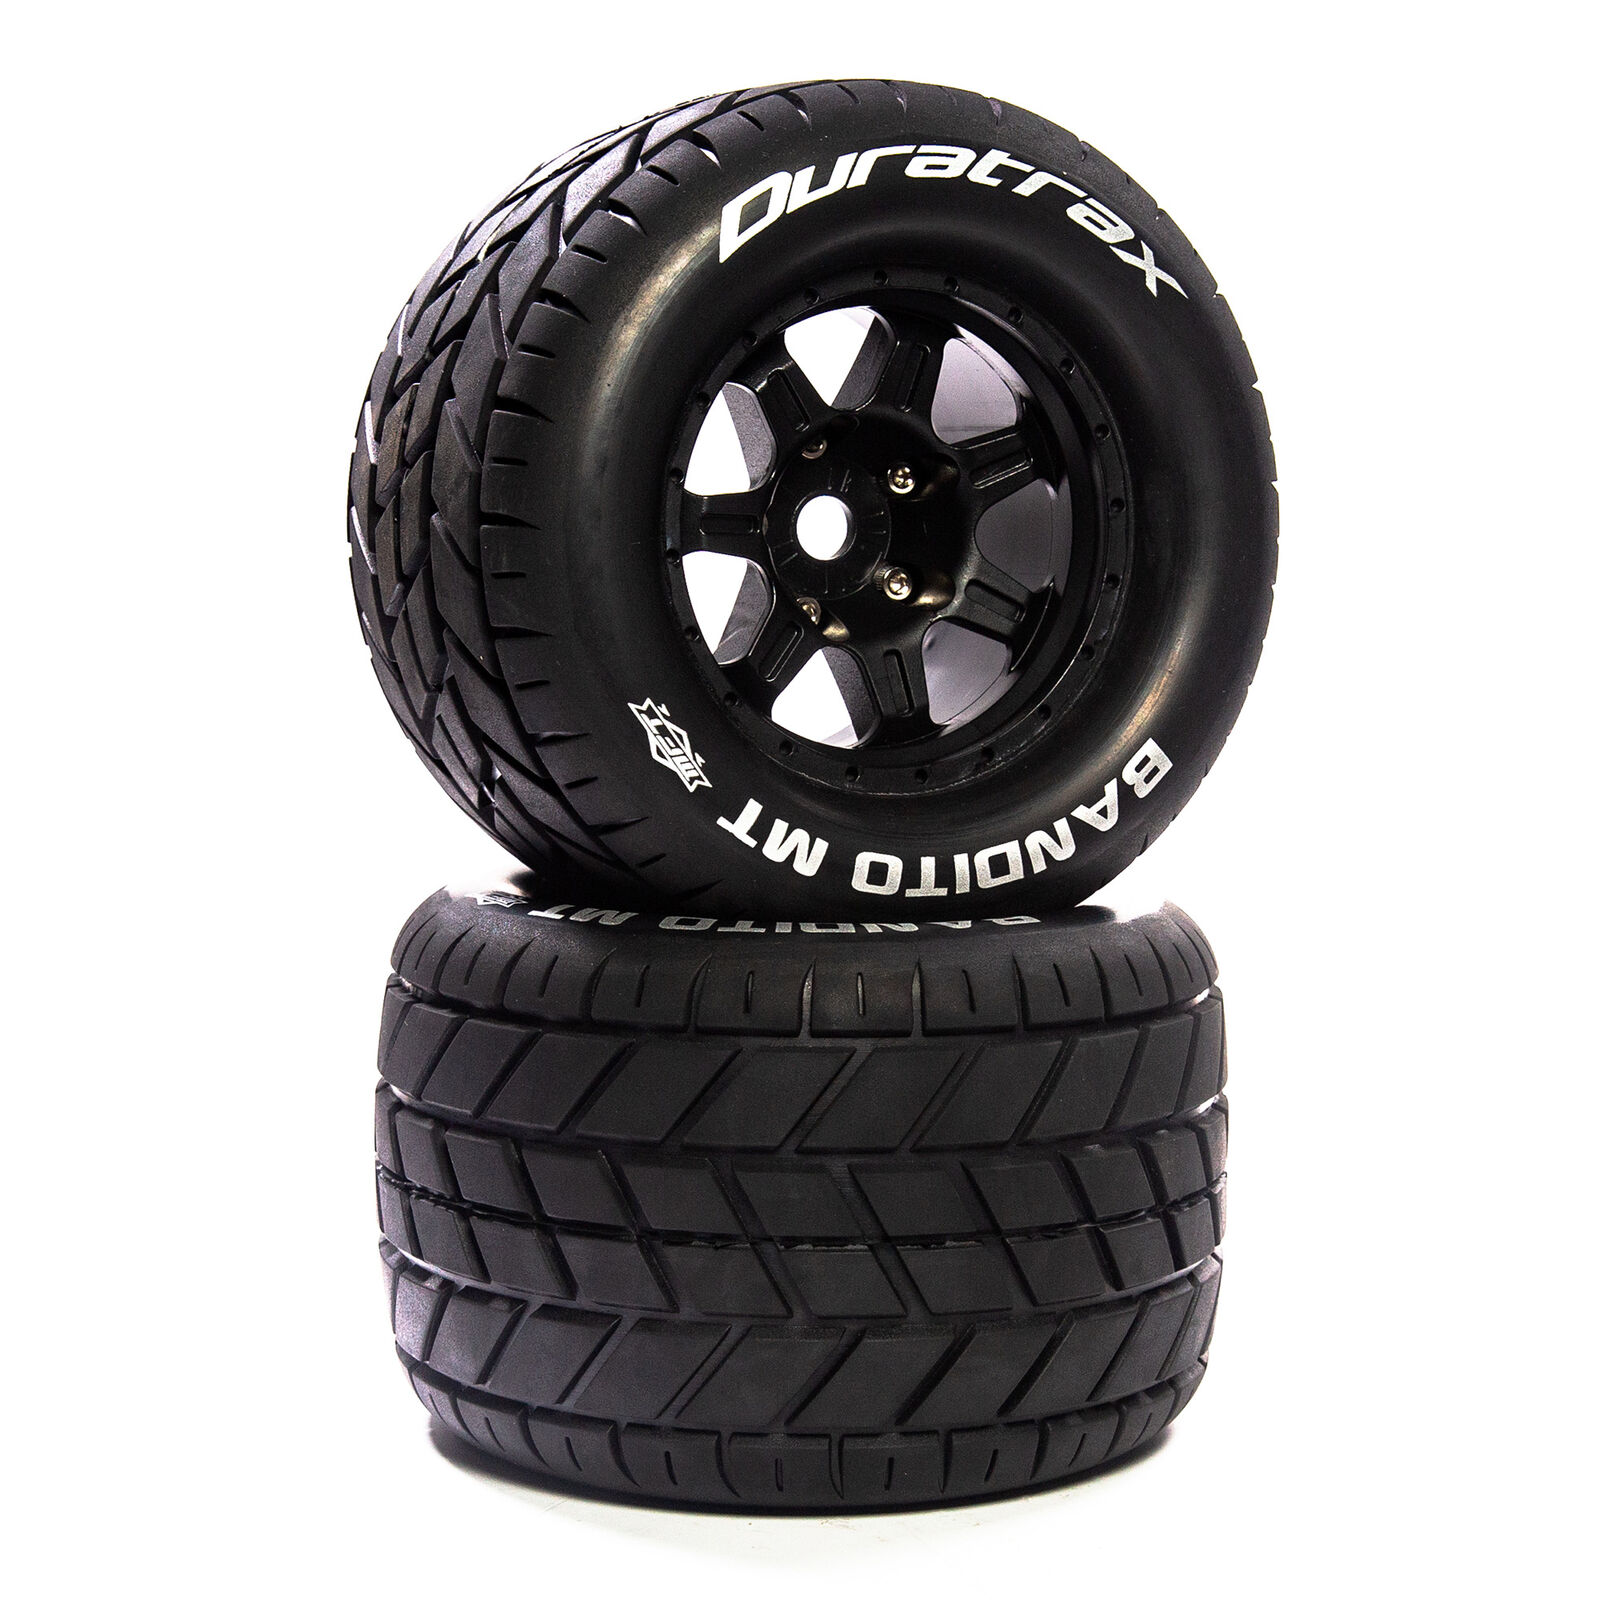 Bandito MT Belt 3.8" Mounted Front/Rear Tires .5 Offset 17mm, Black (2)